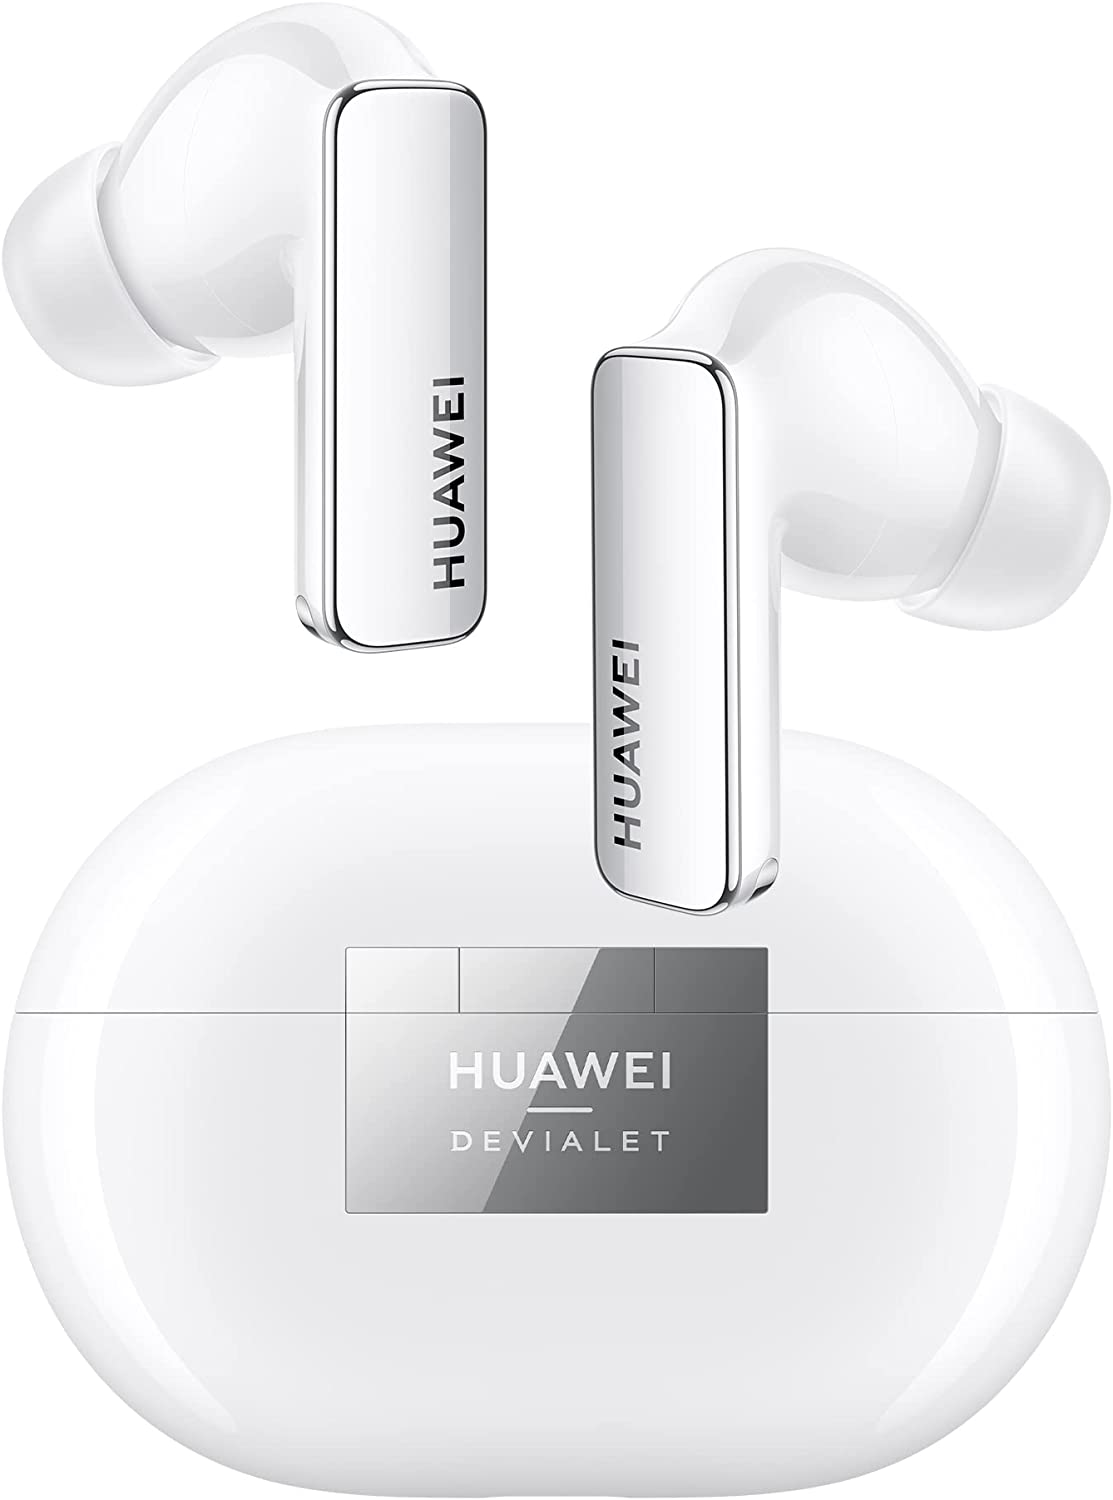 Huawei FreeBuds Pro 2, la marca renueva sus auriculares estrella